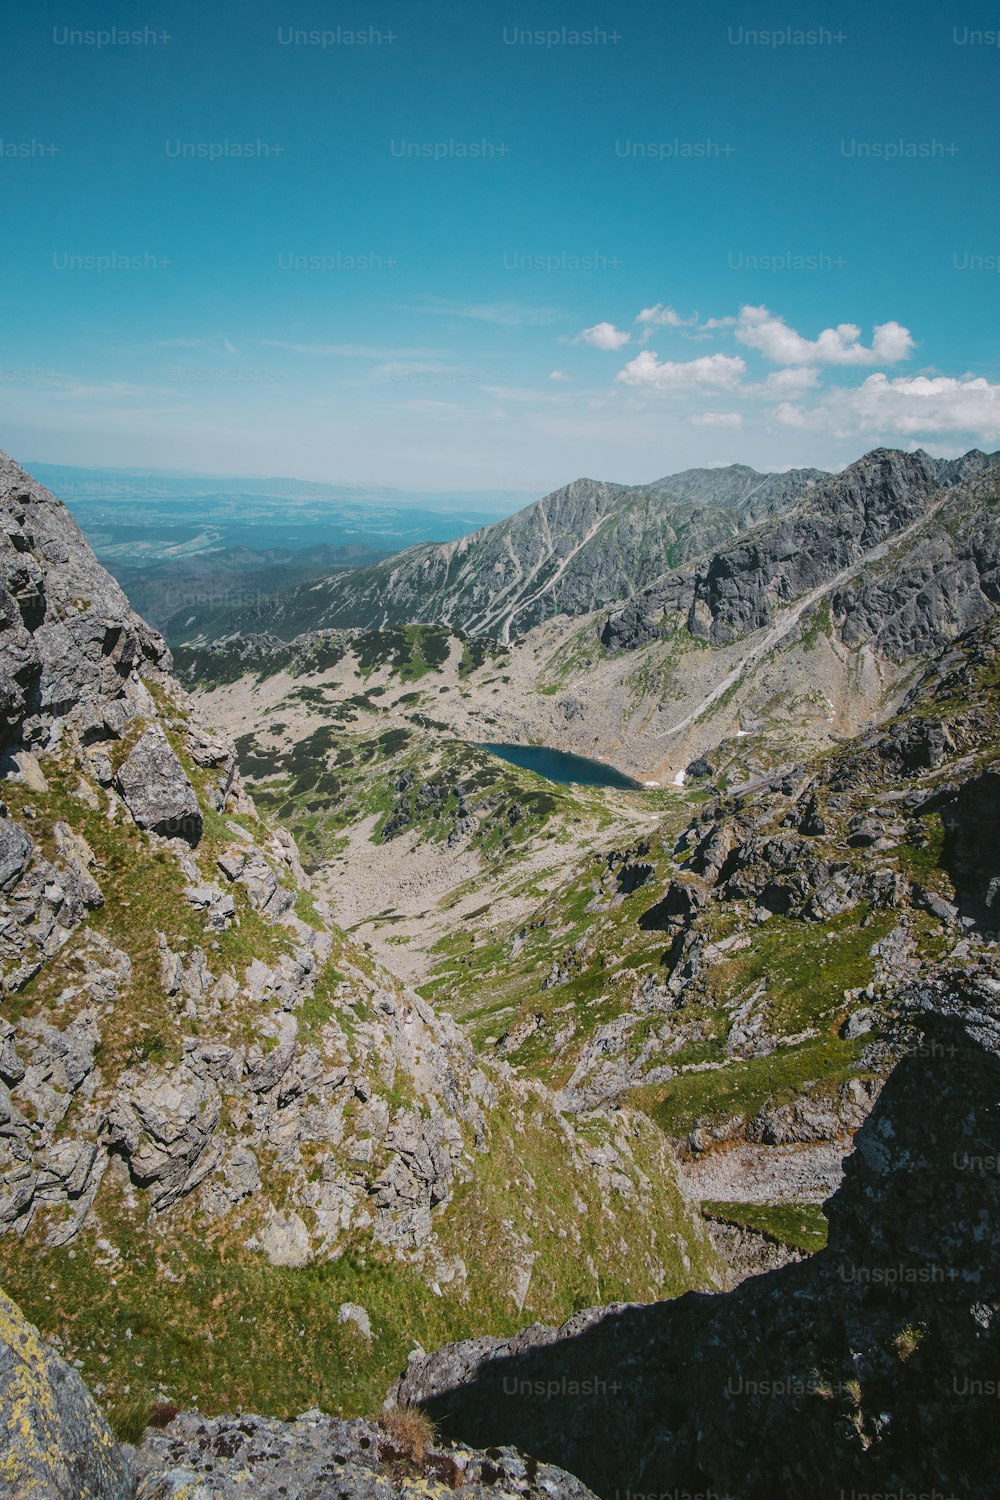 Una vista de una cadena montañosa con un lago en el medio